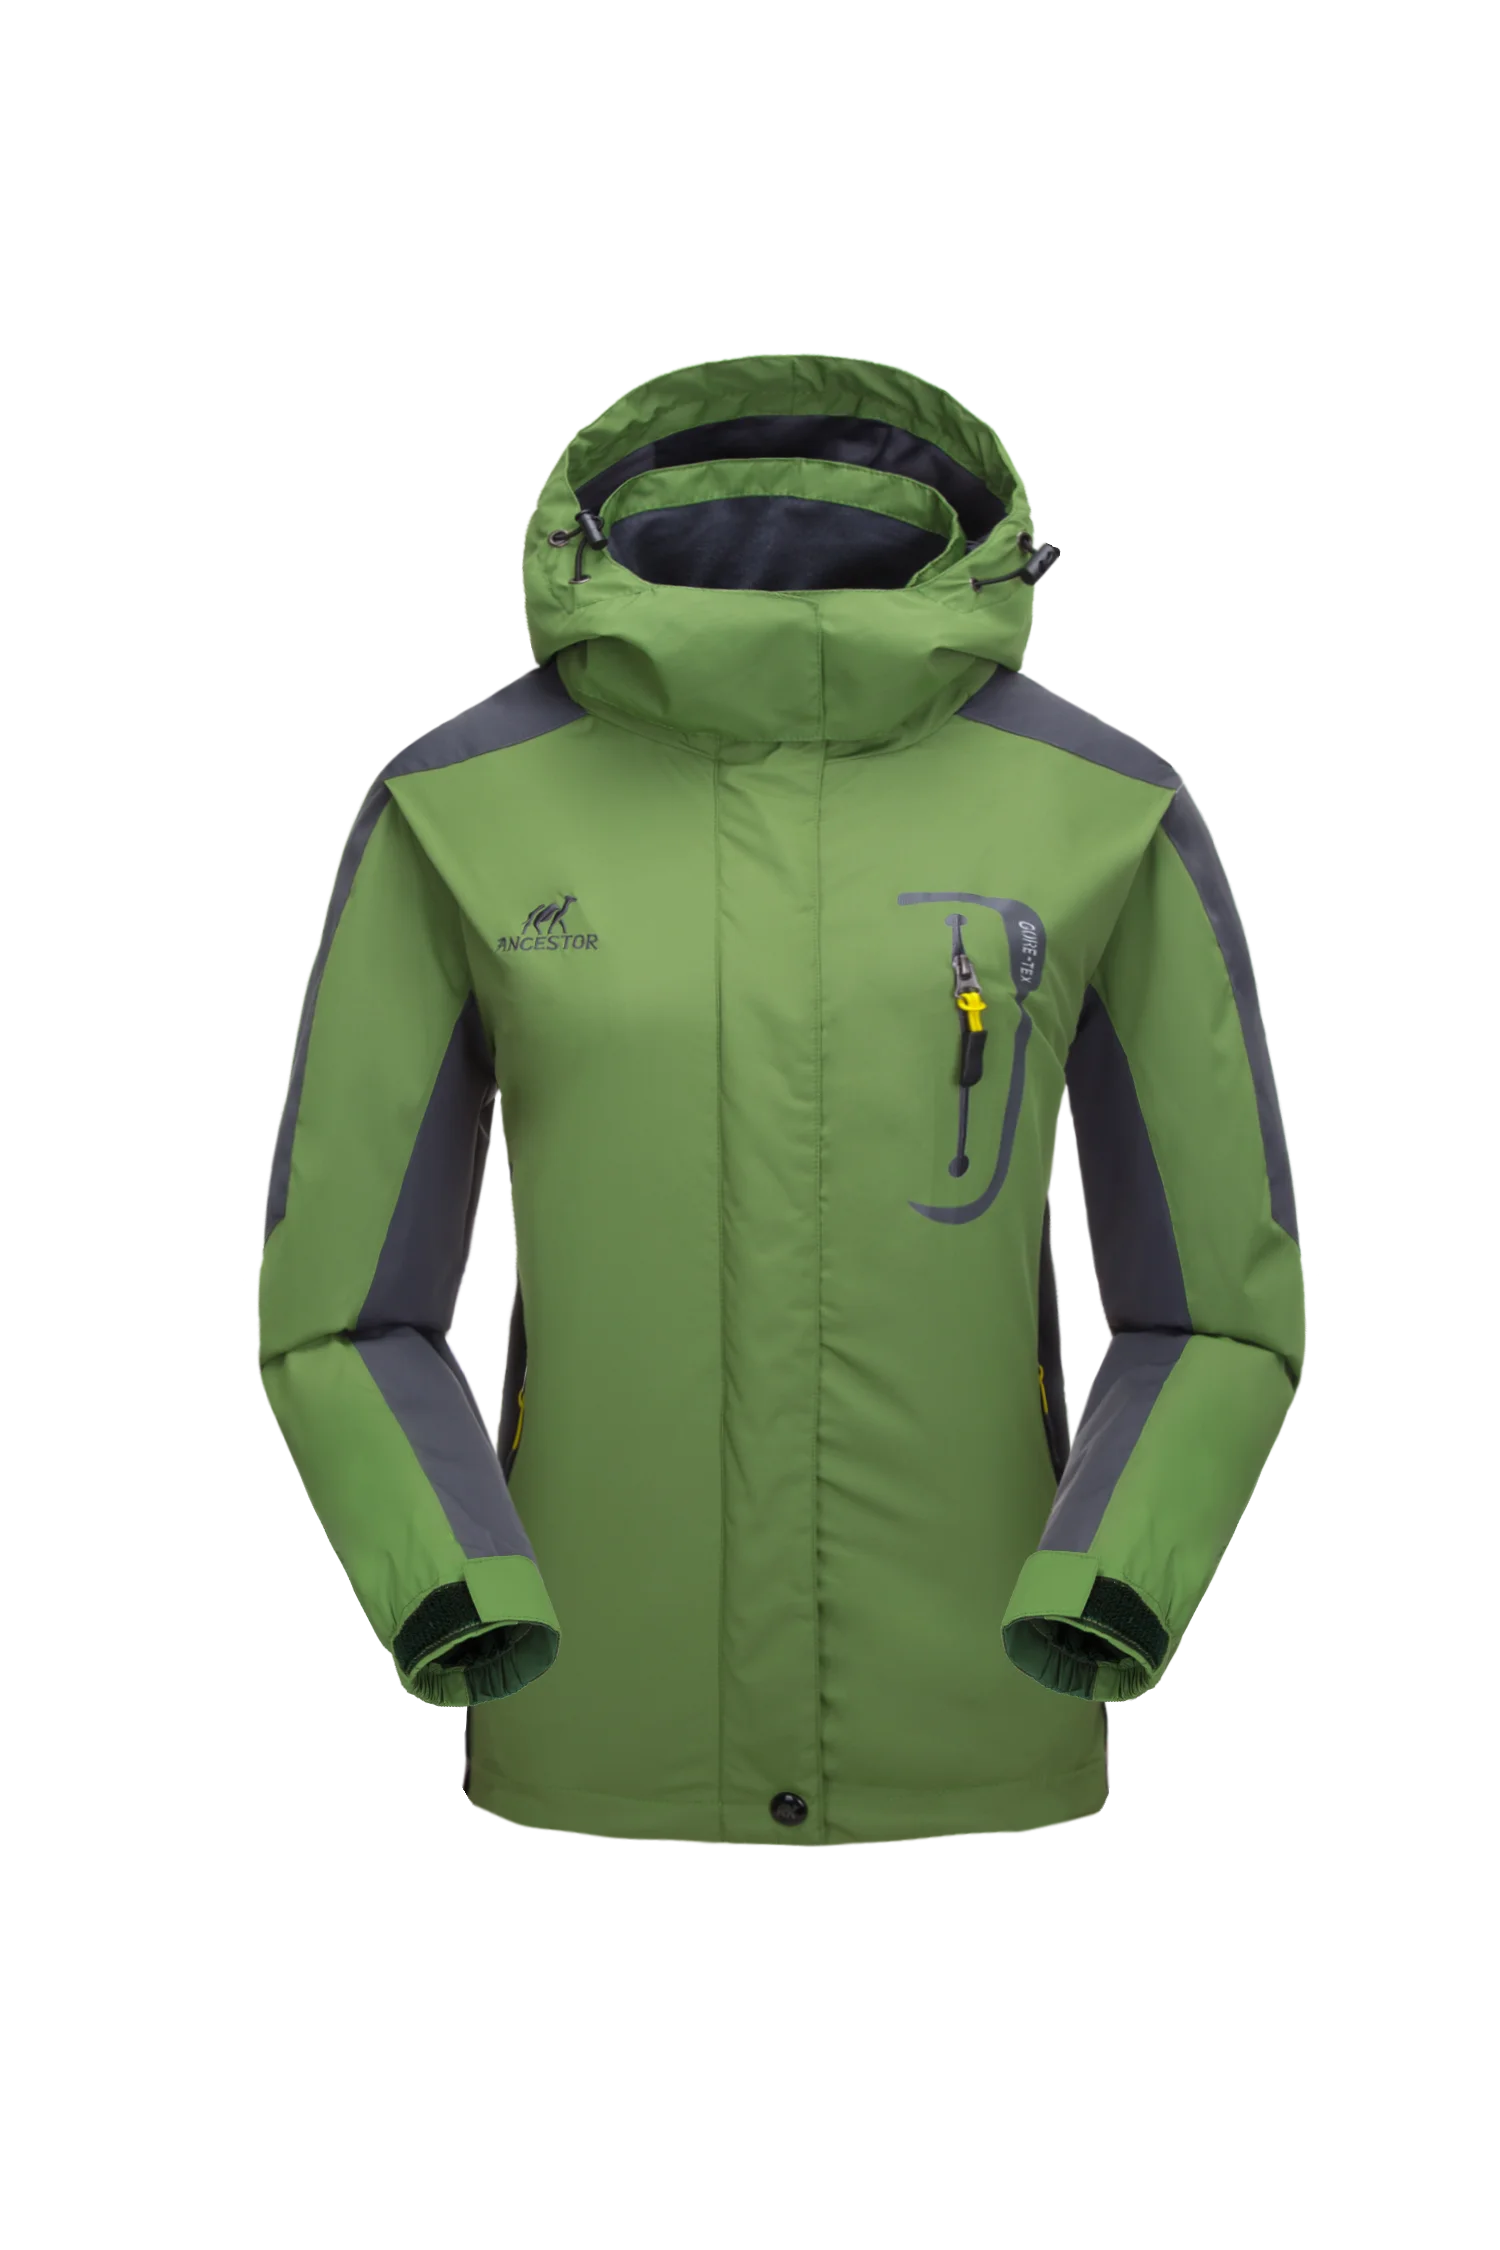 Женская уличная походная горная куртка, пальто, верхняя одежда, ветровка, спортивная одежда, спортивный костюм, свитер, спортивные блейзеры 8898 - Цвет: Зеленый